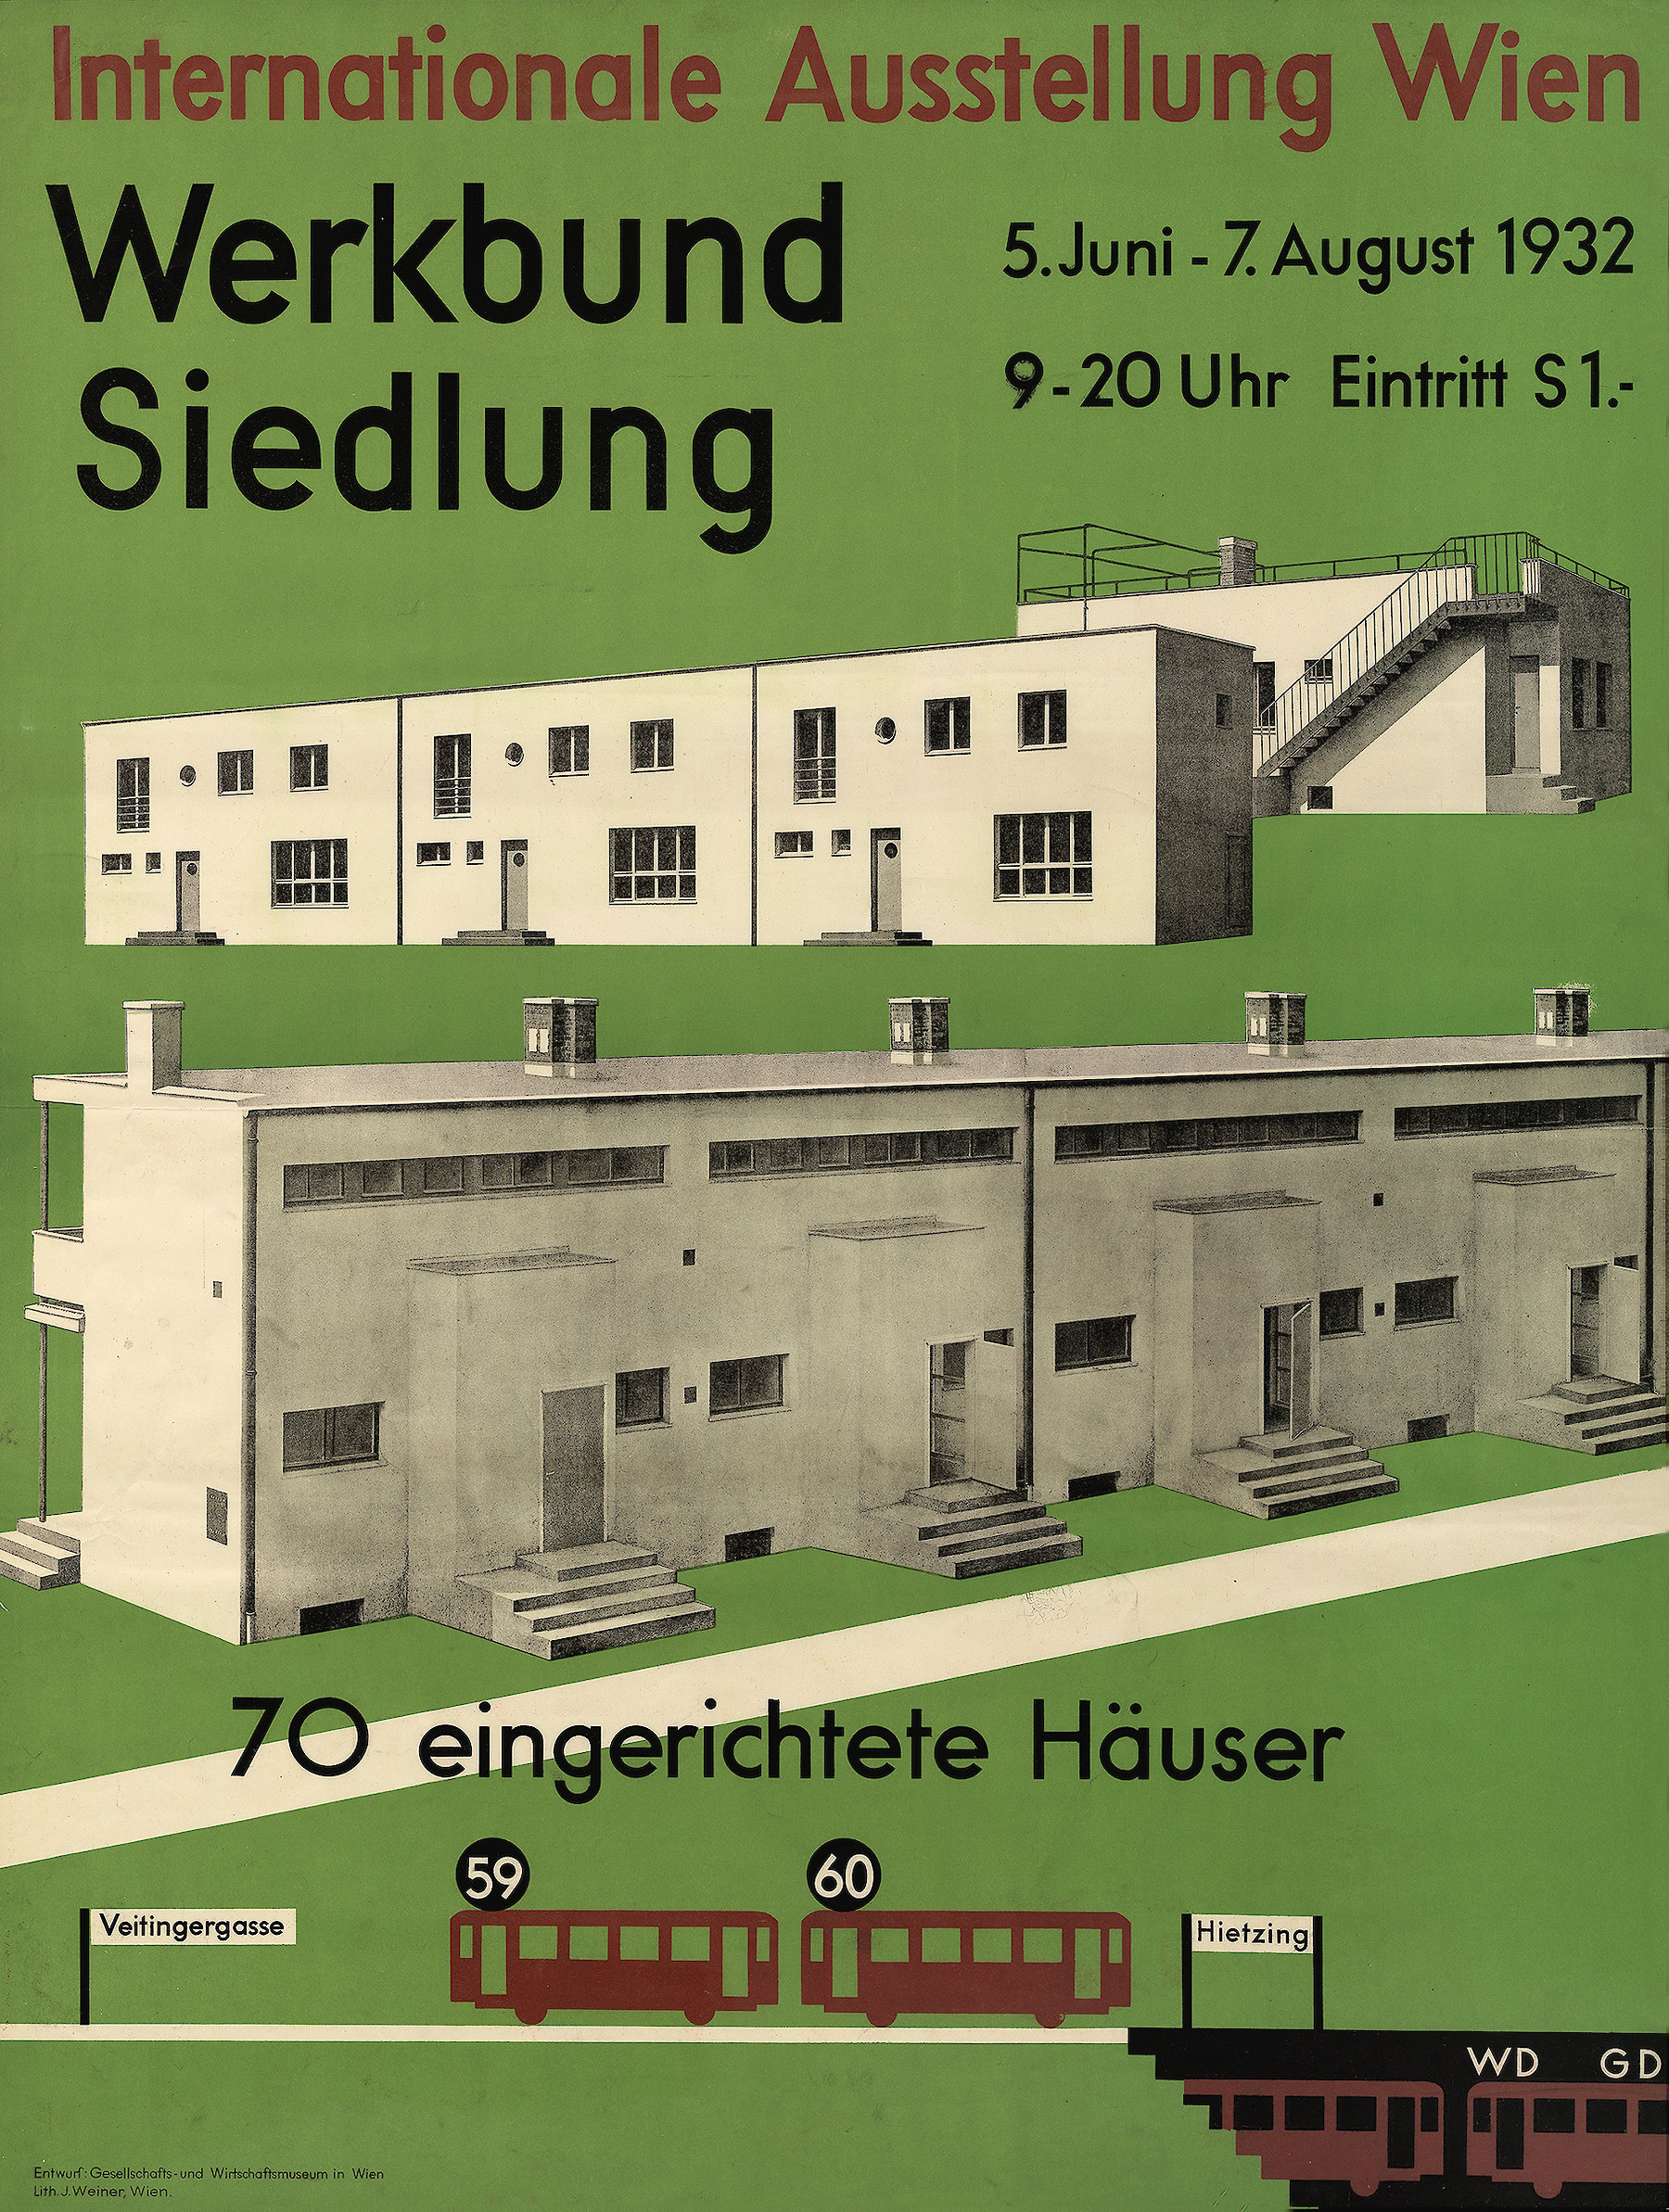 Werkbund Siedlung. Internationale Ausstellung Wien, 1932 Gesellschafts- und Wirtschaftsmuseum in Wien/I.Weiner 1932